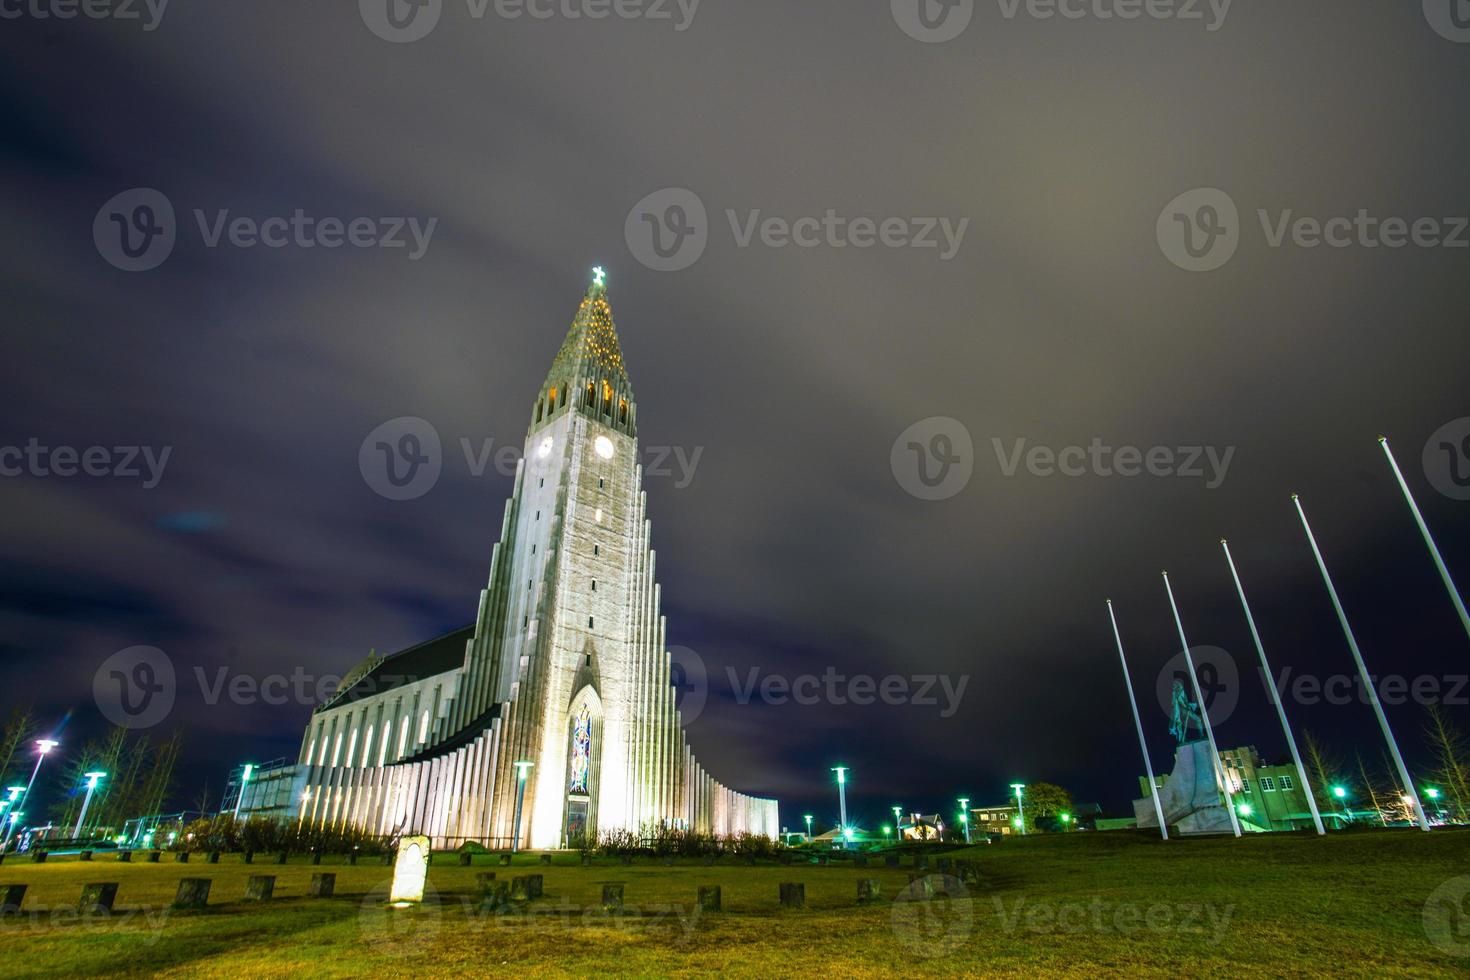 hallgrimskirkja ou igreja de hallgrimur, um luterano, ou igreja da islândia, igreja paroquial em reykjavik, em homenagem ao poeta islandês e clérigo hallgrimur petursson, islândia foto